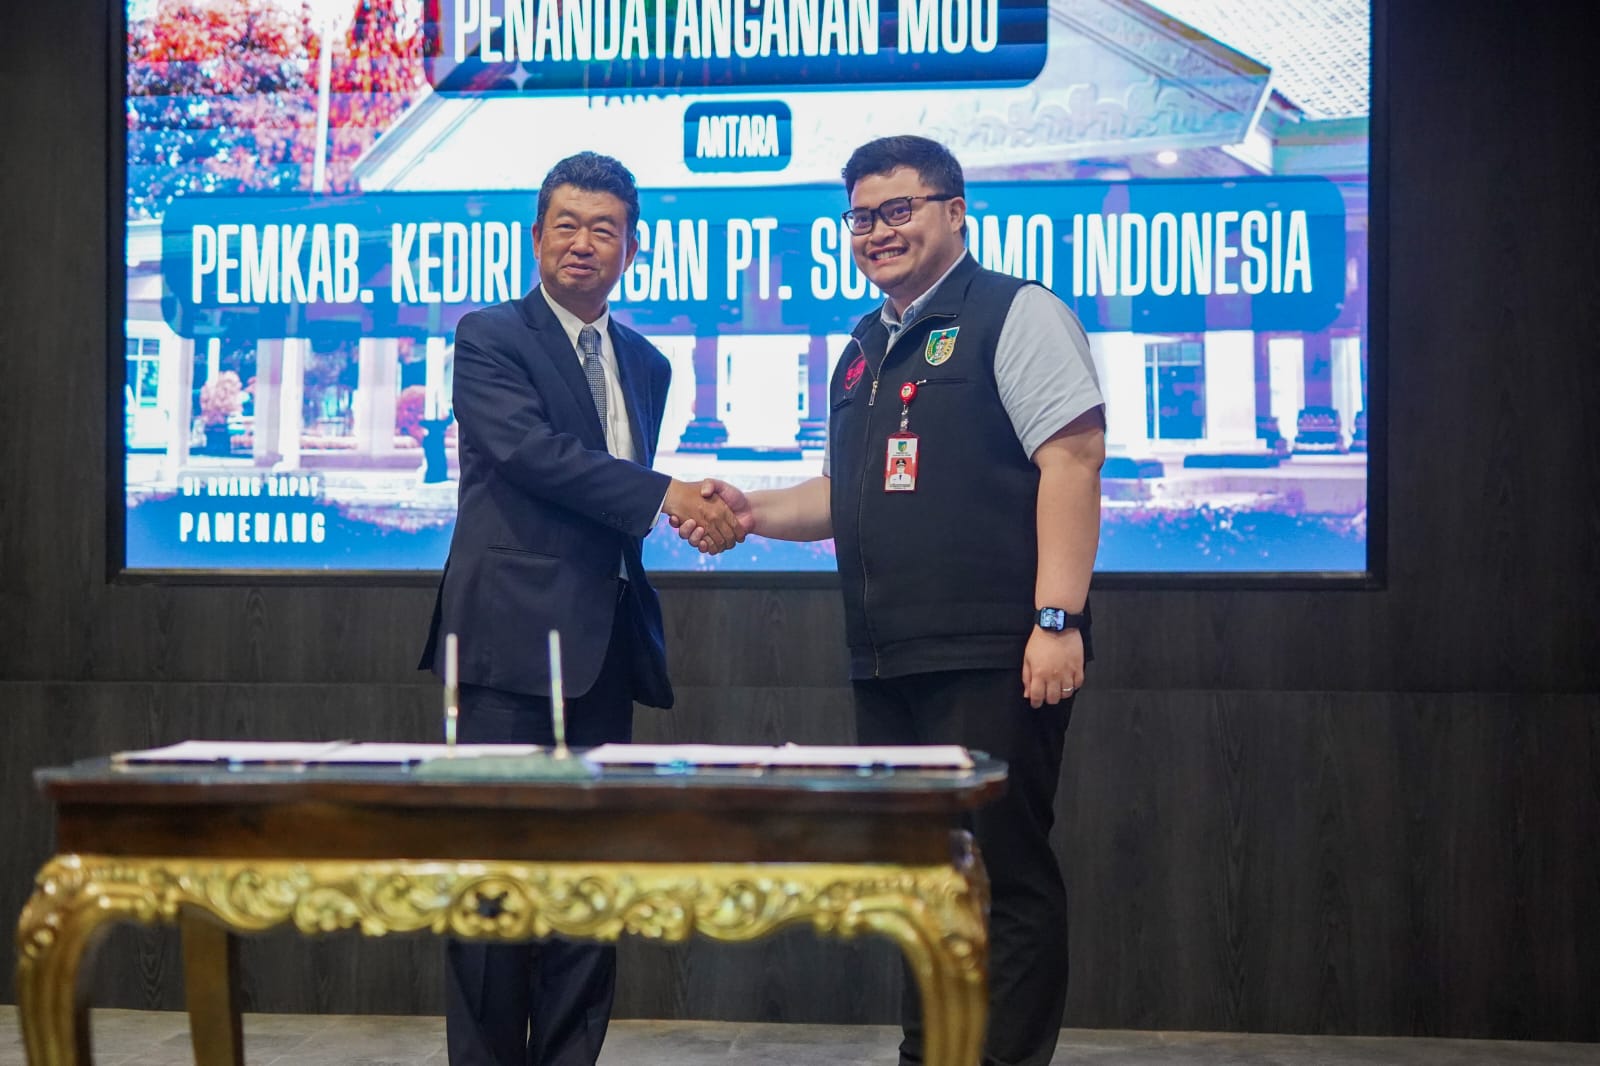 Bupati Kediri Jalin MoU dengan PT Sumitomo Indonesia